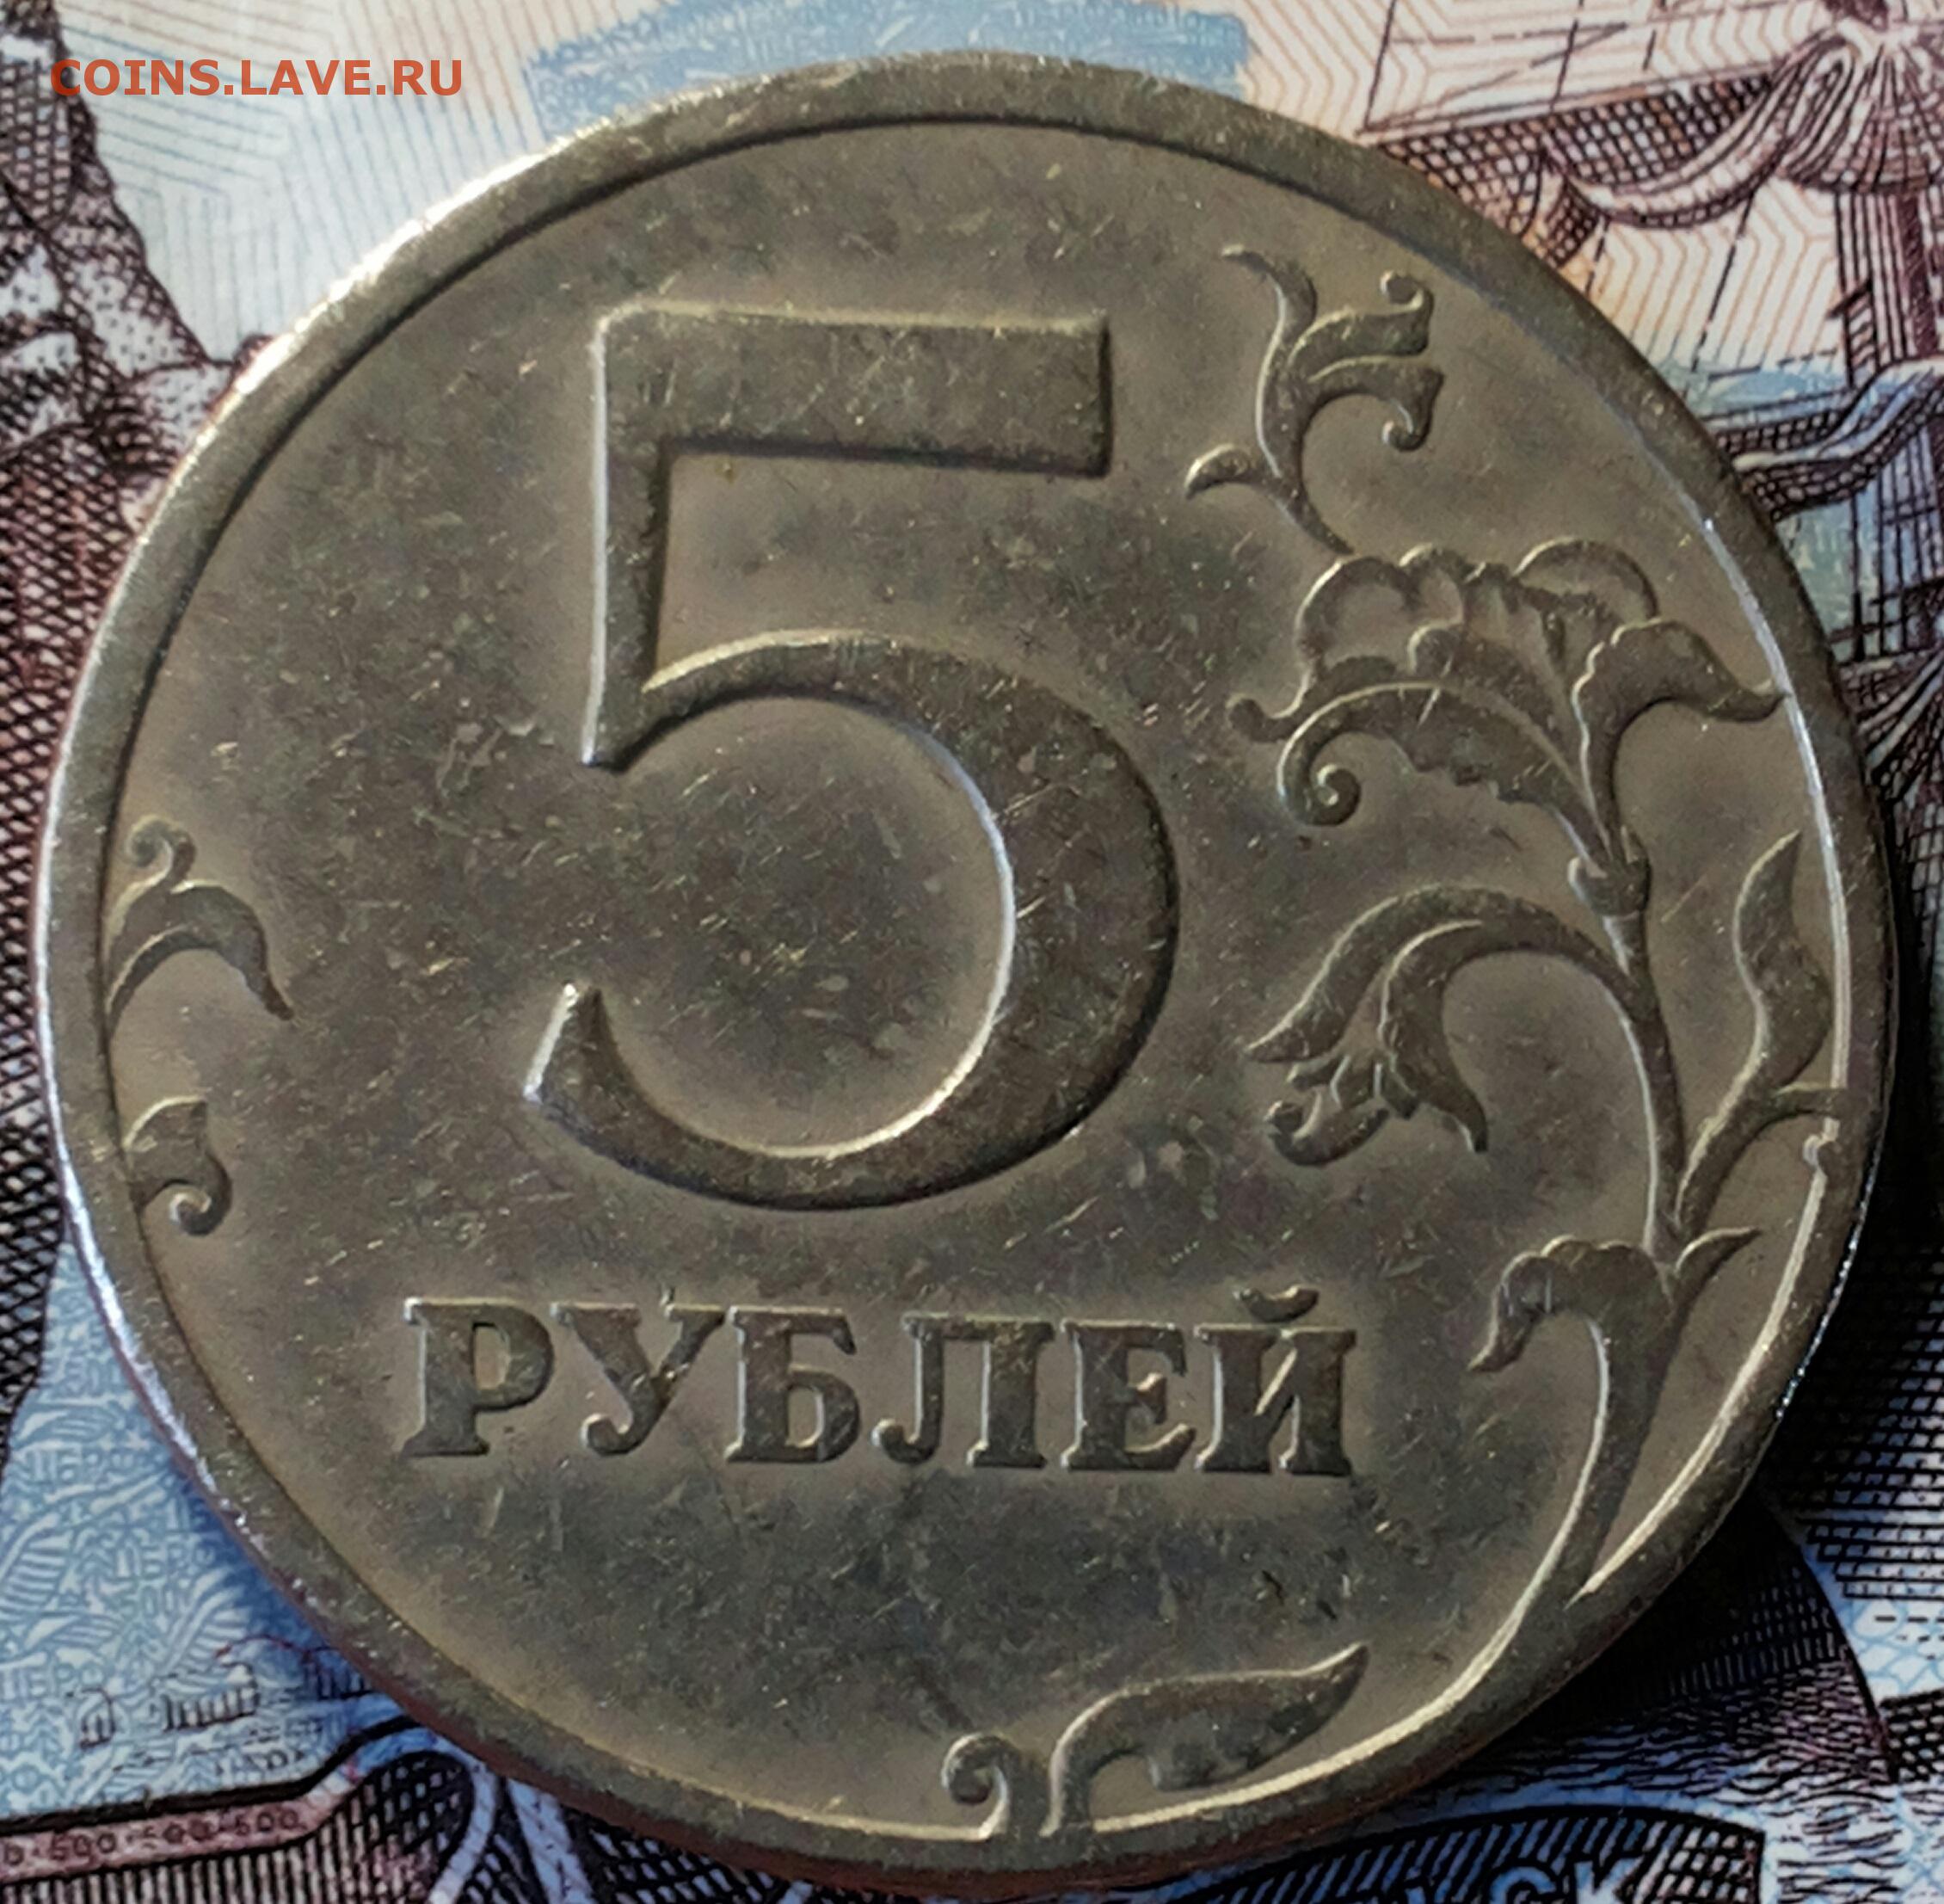 5 рублей 80 года. 5 Рублей 1997г. 5 Р 1997 года. 5 Рублей 1997. 5 Рублей с малой точкой.